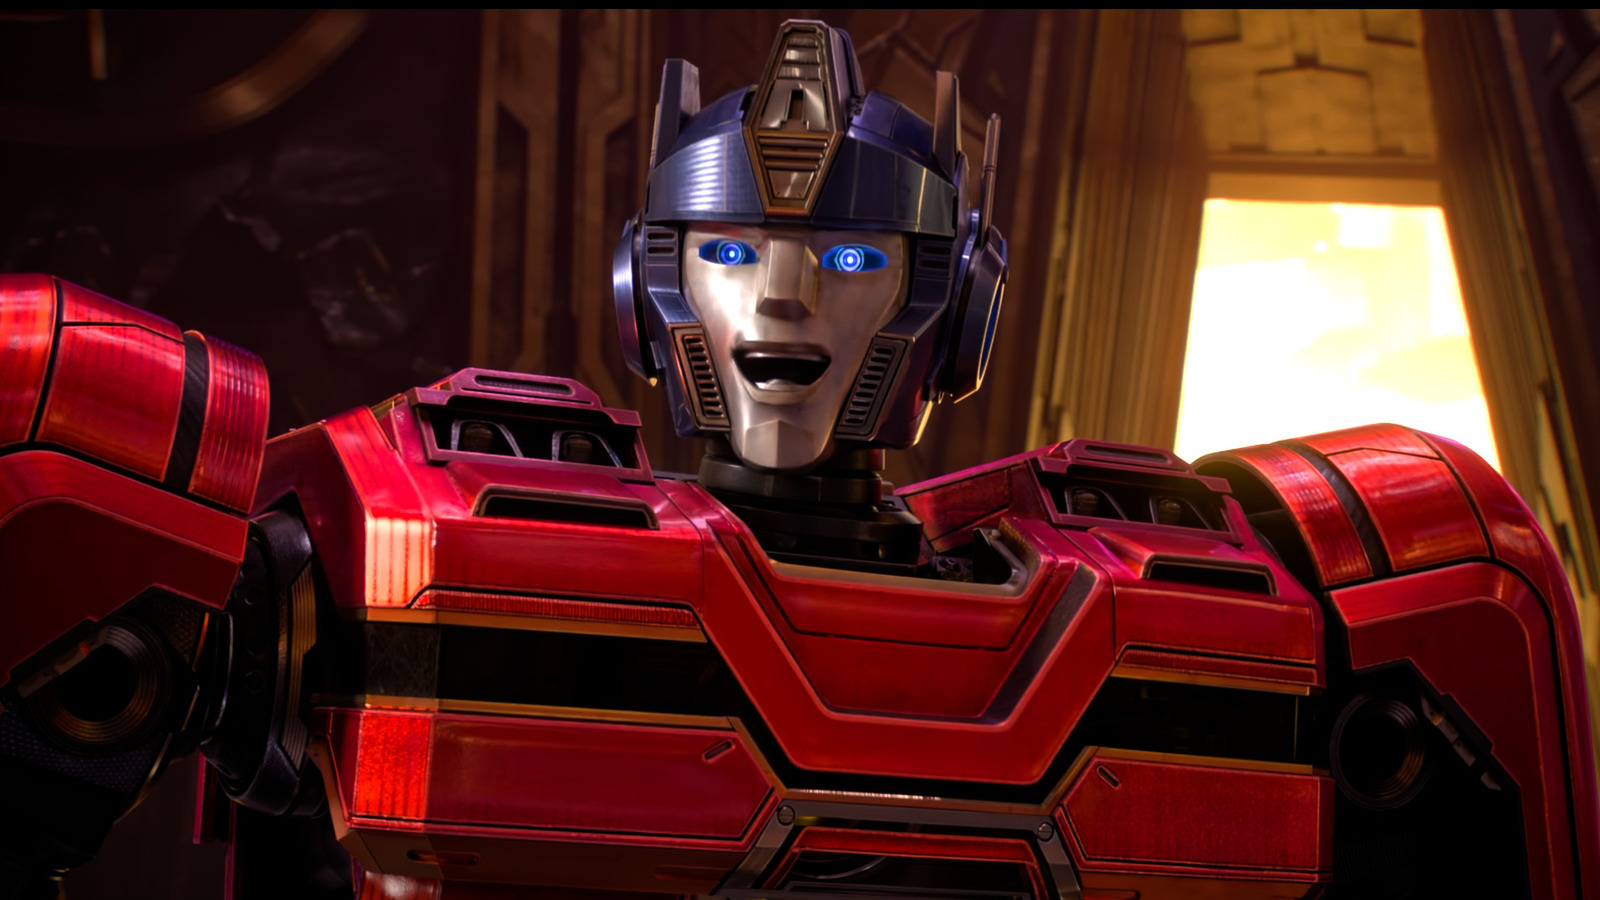 Трейлер Transformers One представляет Оптимуса Прайма Криса Хемсворта в анимационной истории происхождения